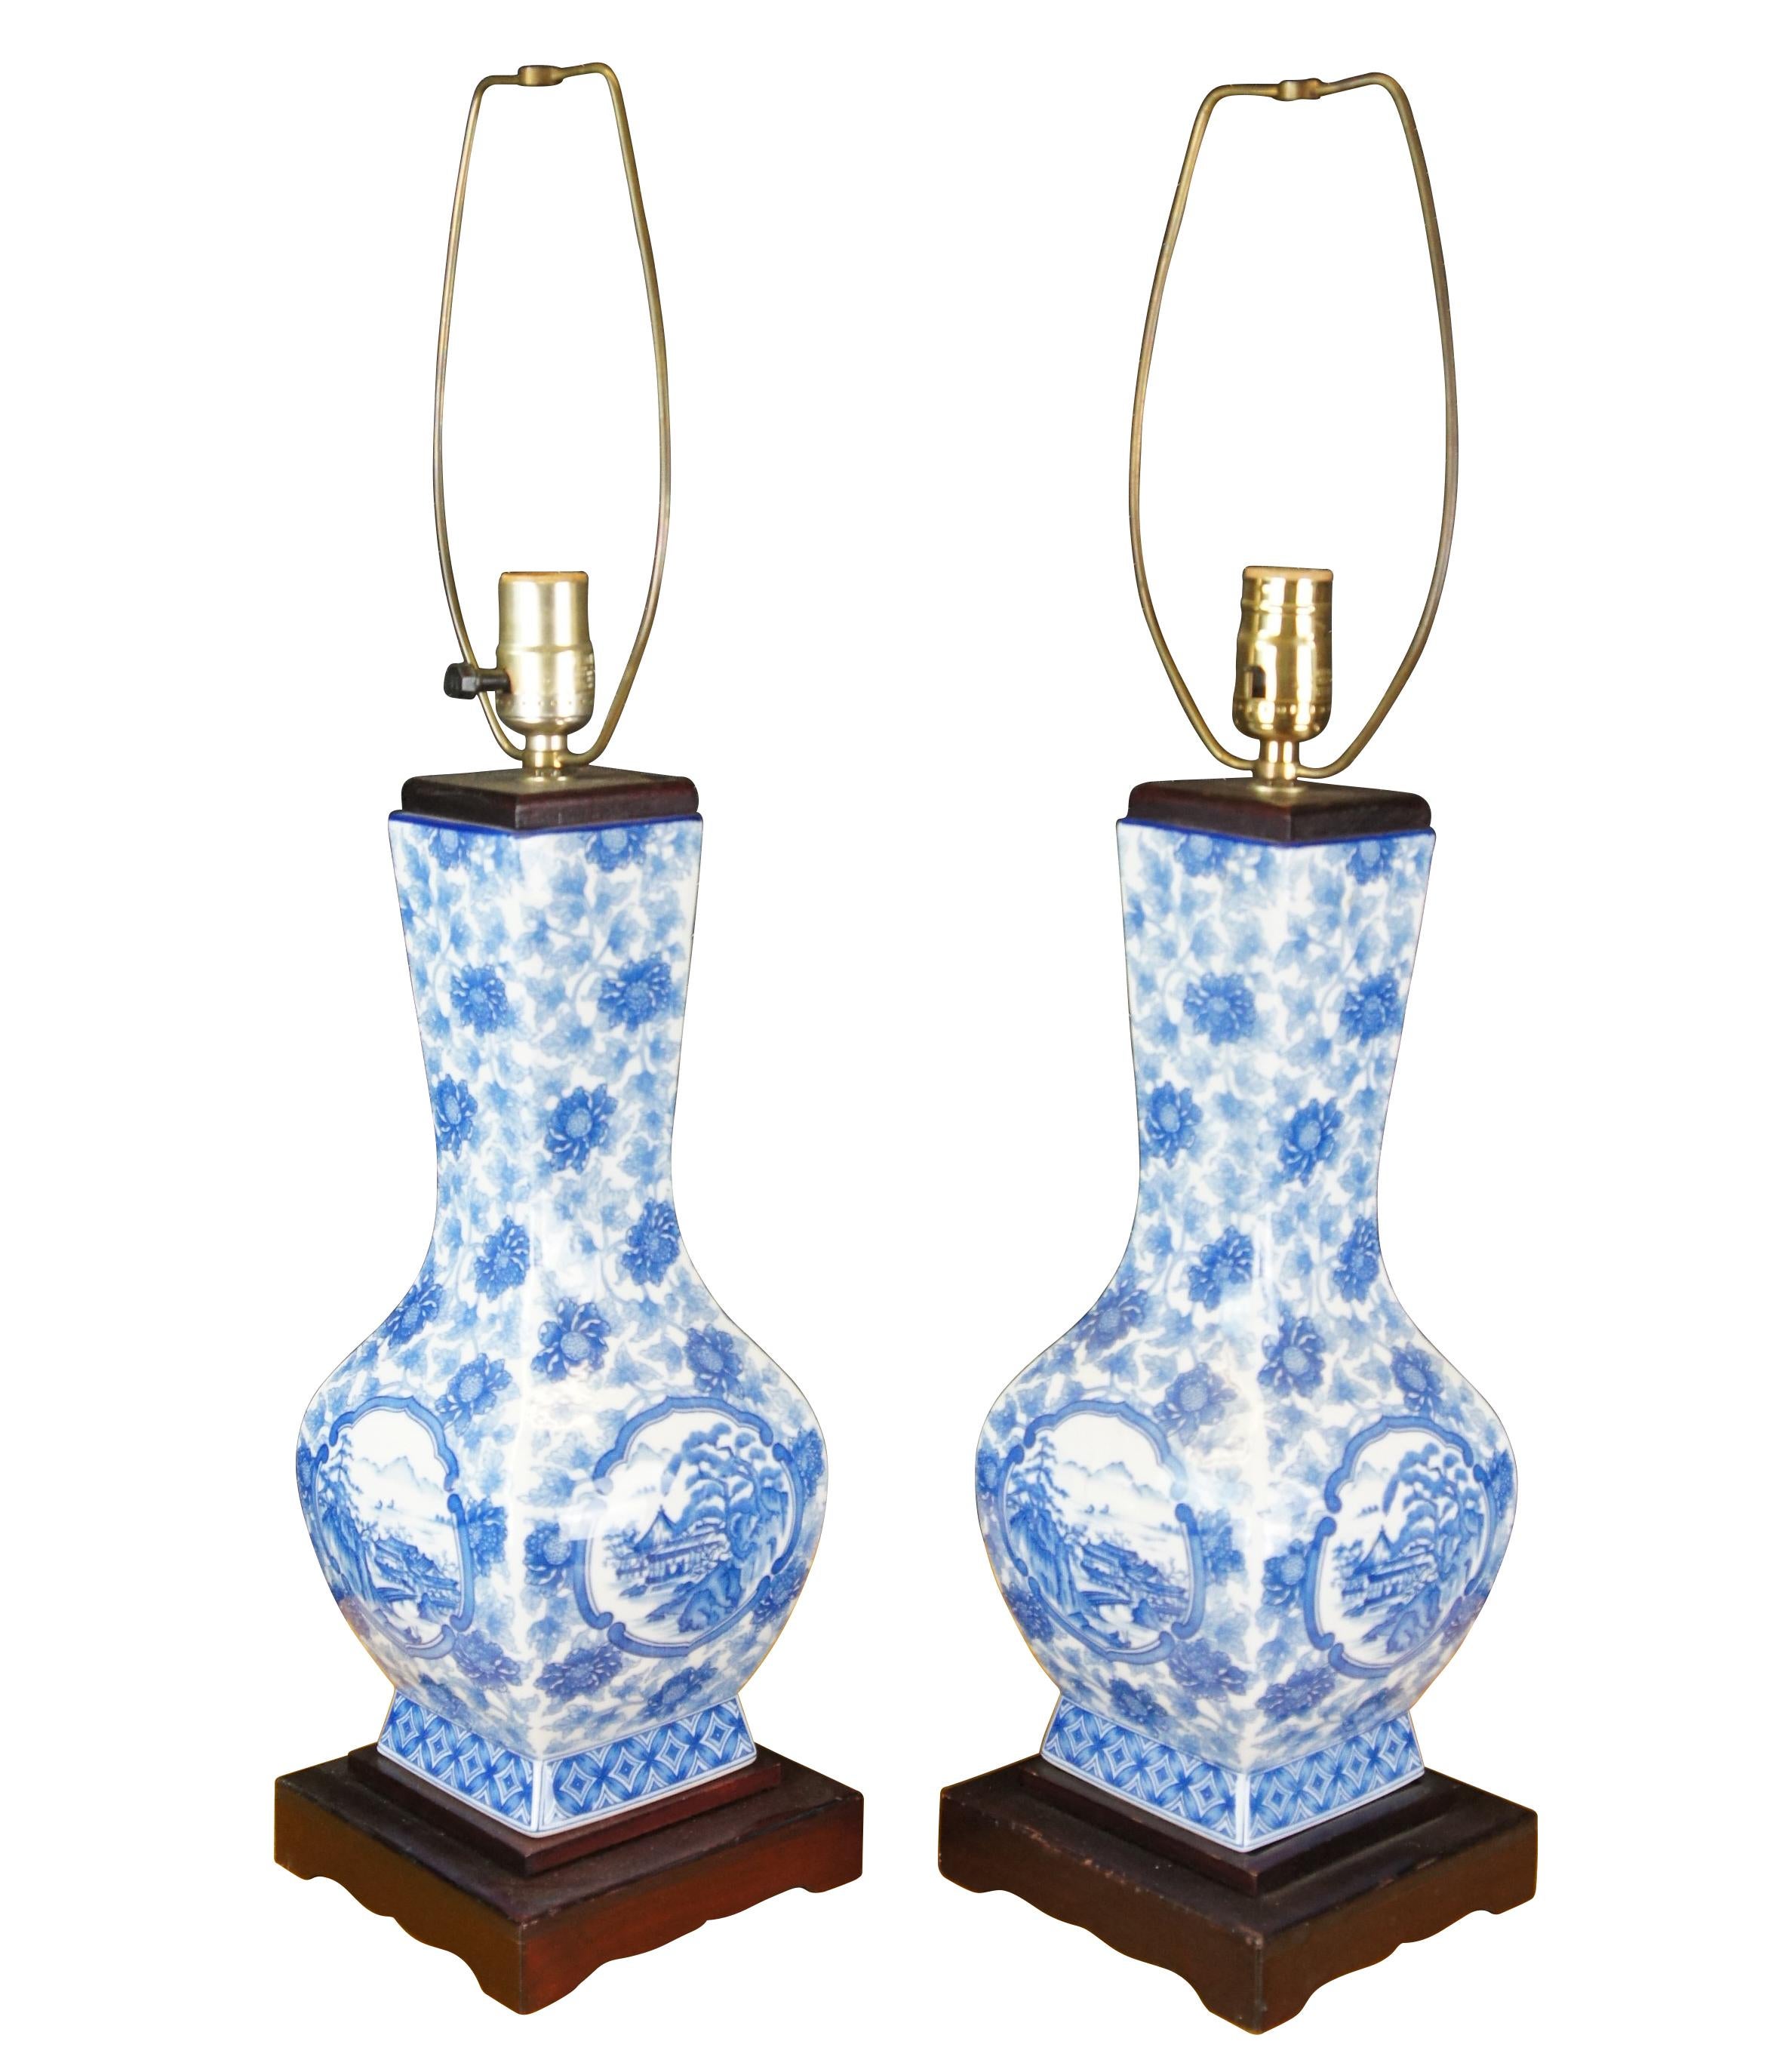 Une élégante paire de lampes de table chinoises en forme de vase ou d'urne.  Les vases en porcelaine bleue et blanche représentent un champ de chrysanthèmes et un paysage de pagode.  Chaque lampe est montée sur un socle en bois. 